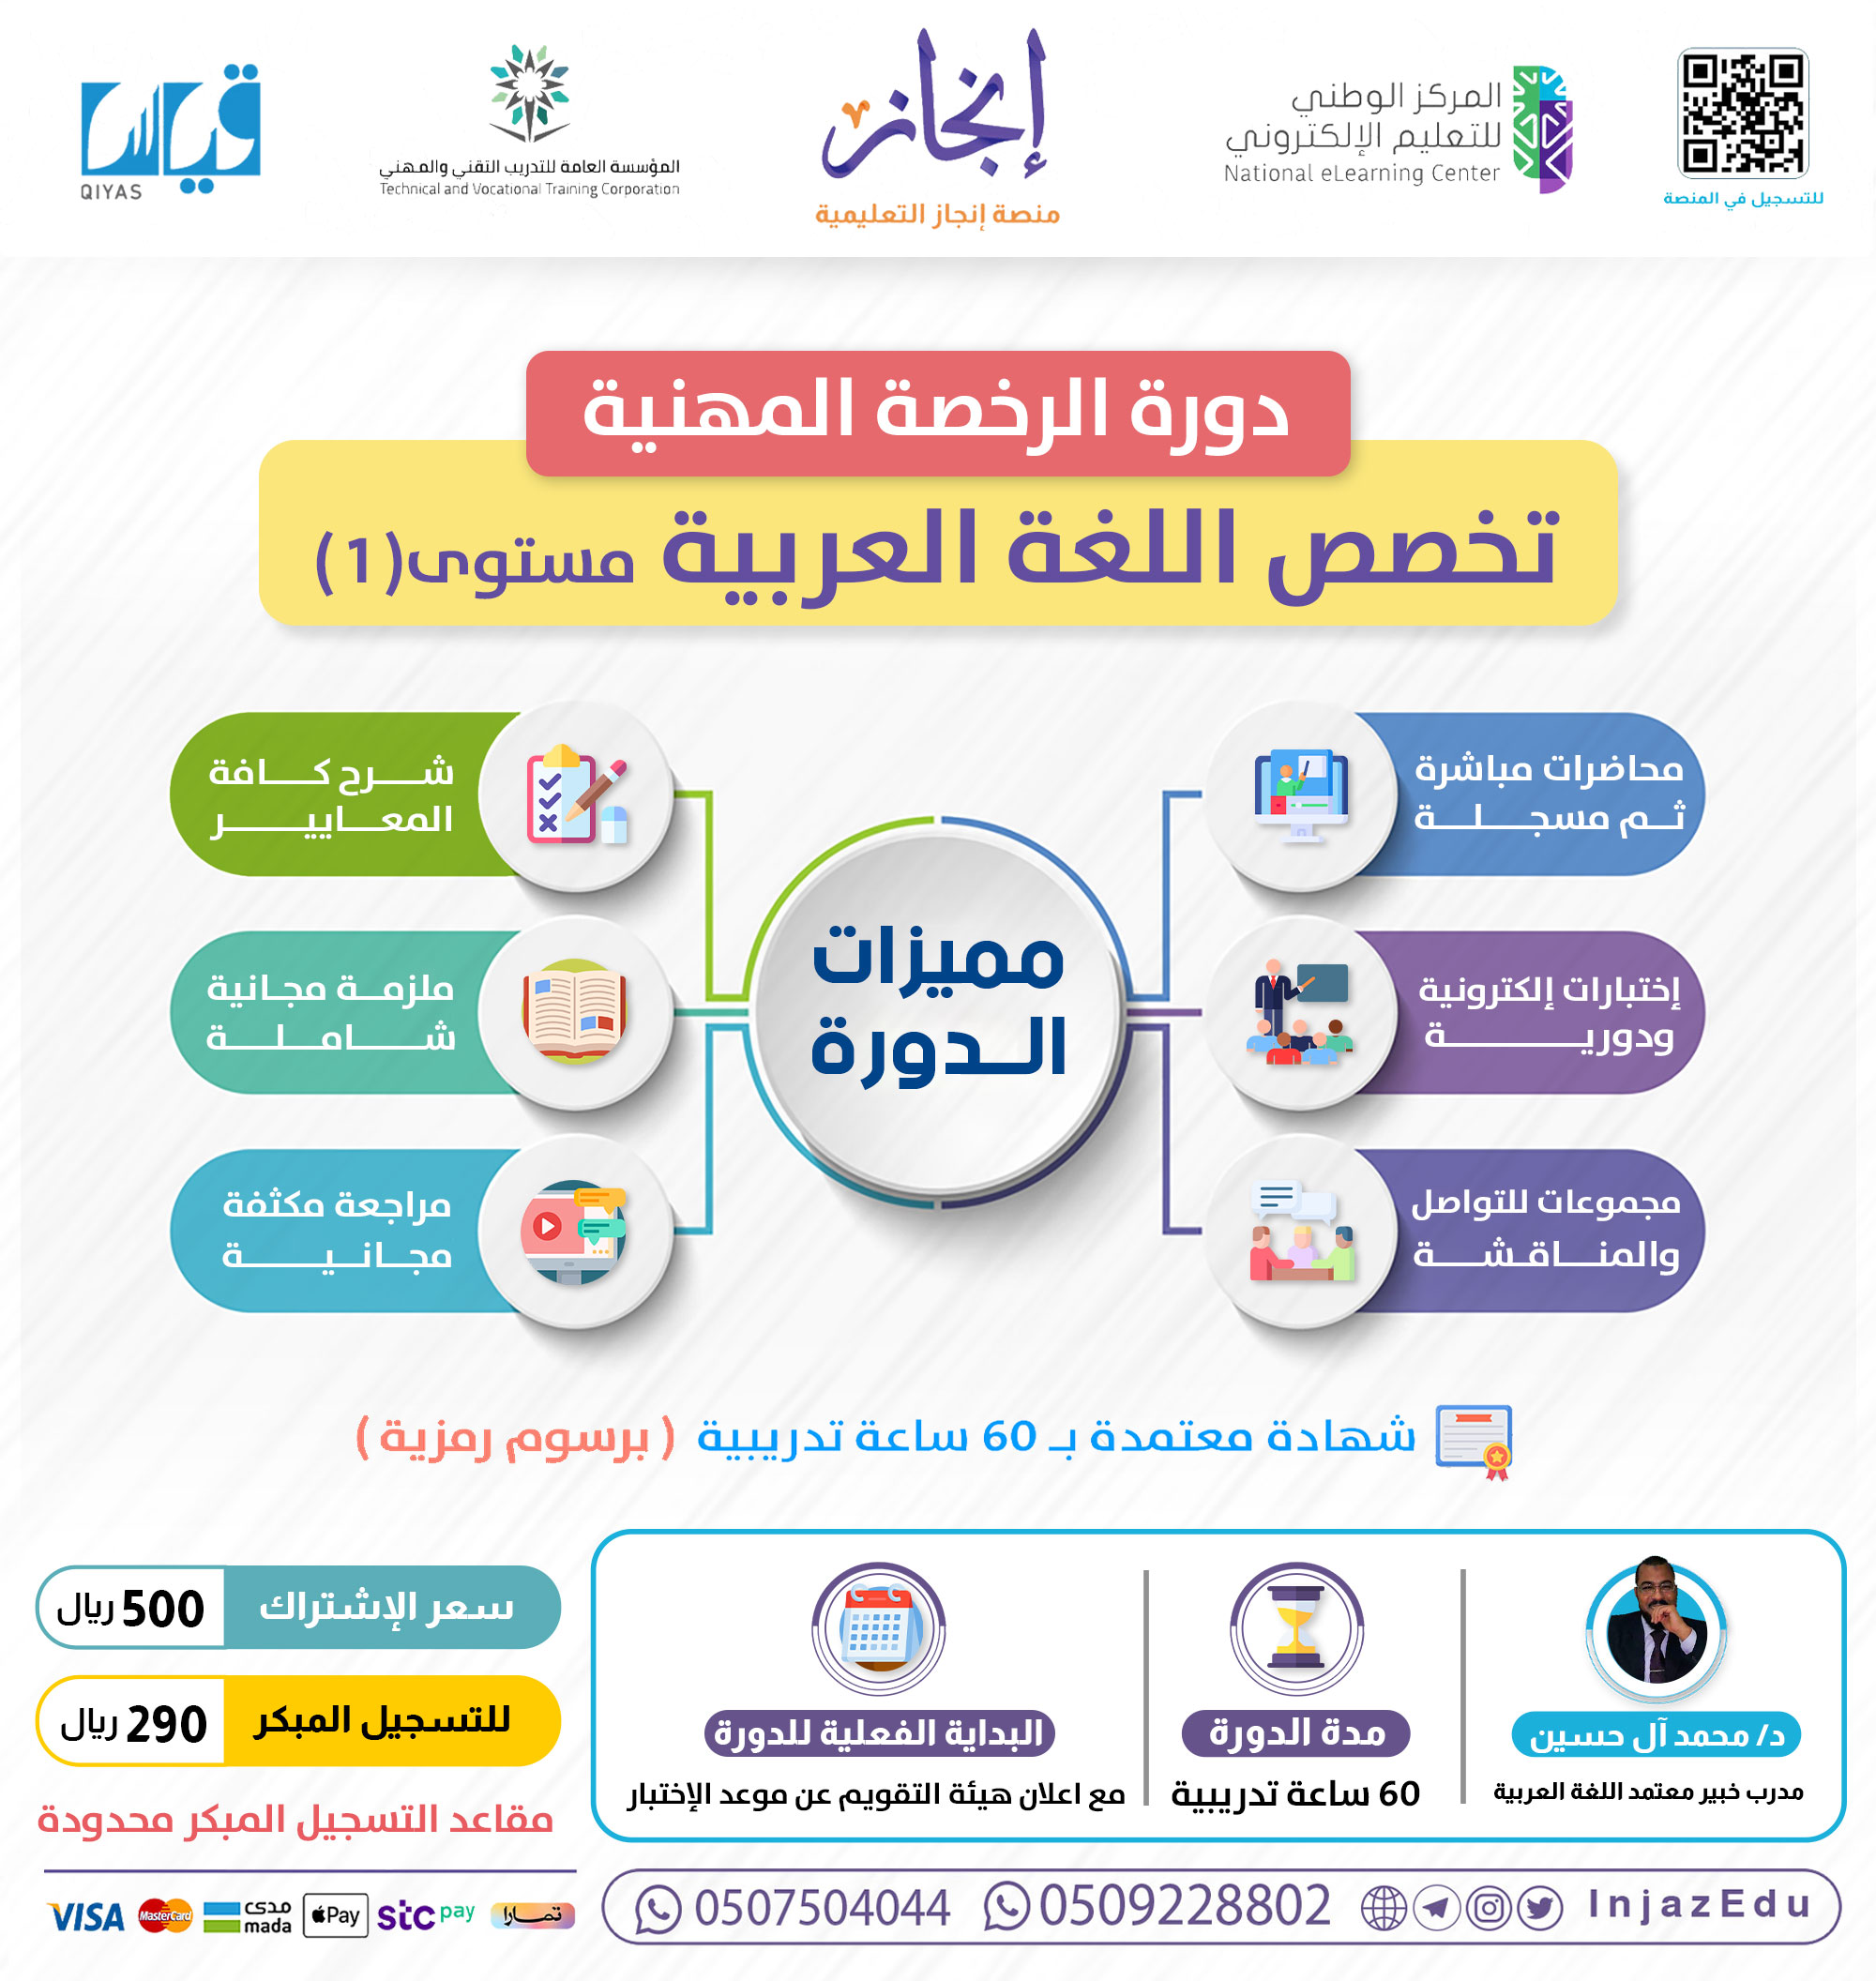 دورة الرخصة المهنية اللغة العربية (1)